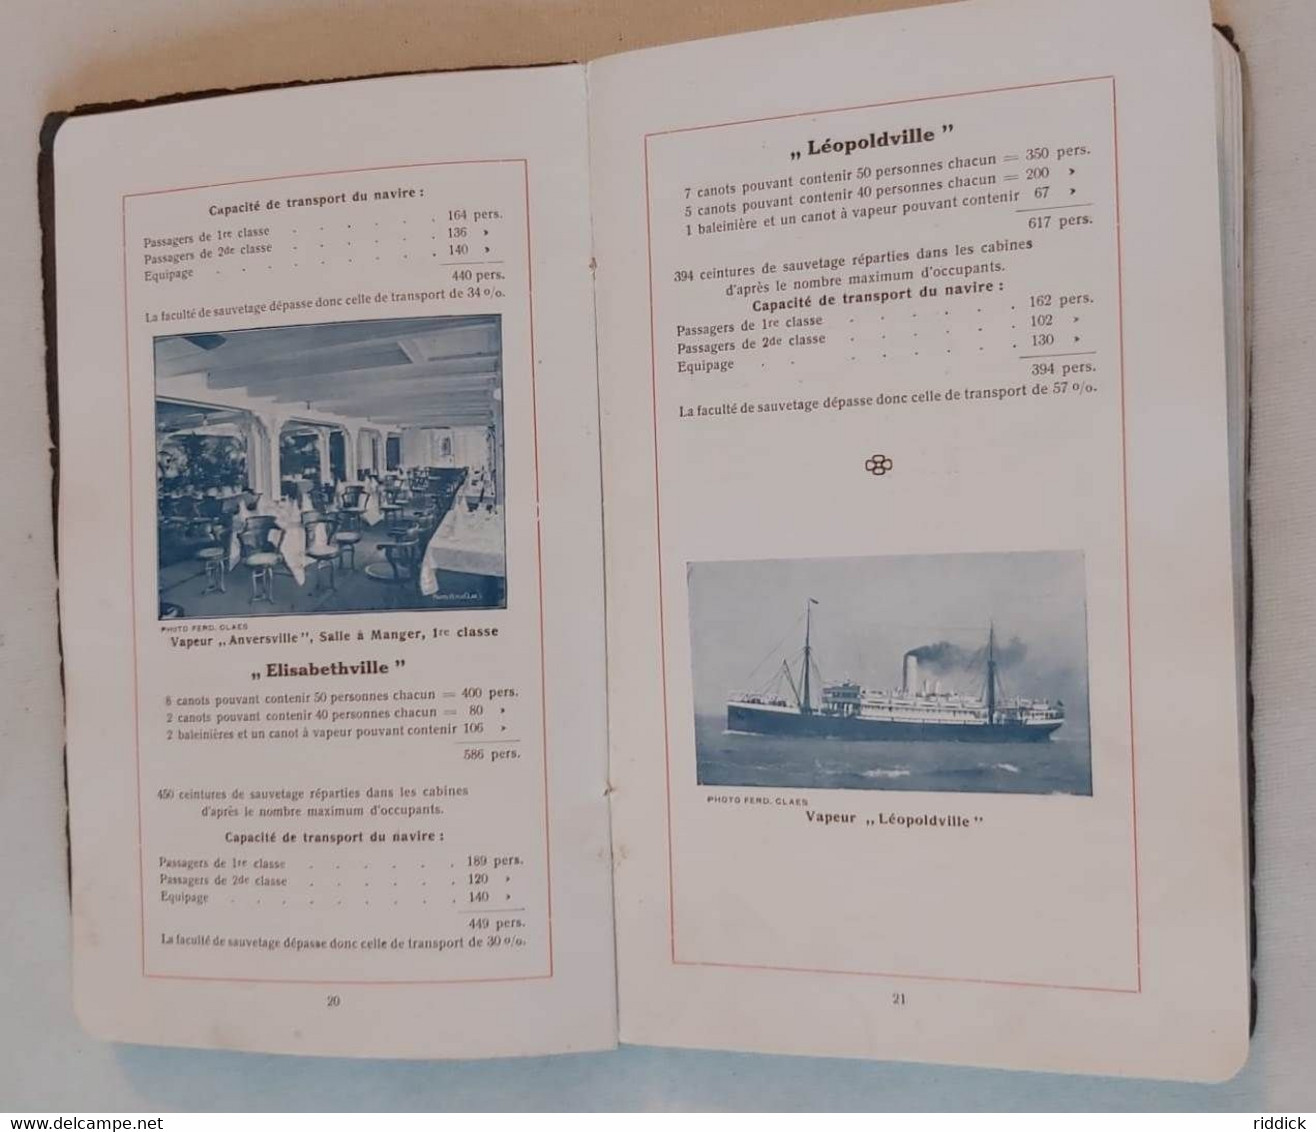 Livret PAQUEBOT 1914 "Compagnie belge maritime du Congo " bon état complet avec cartes et plans bateaux introuvable!!!!